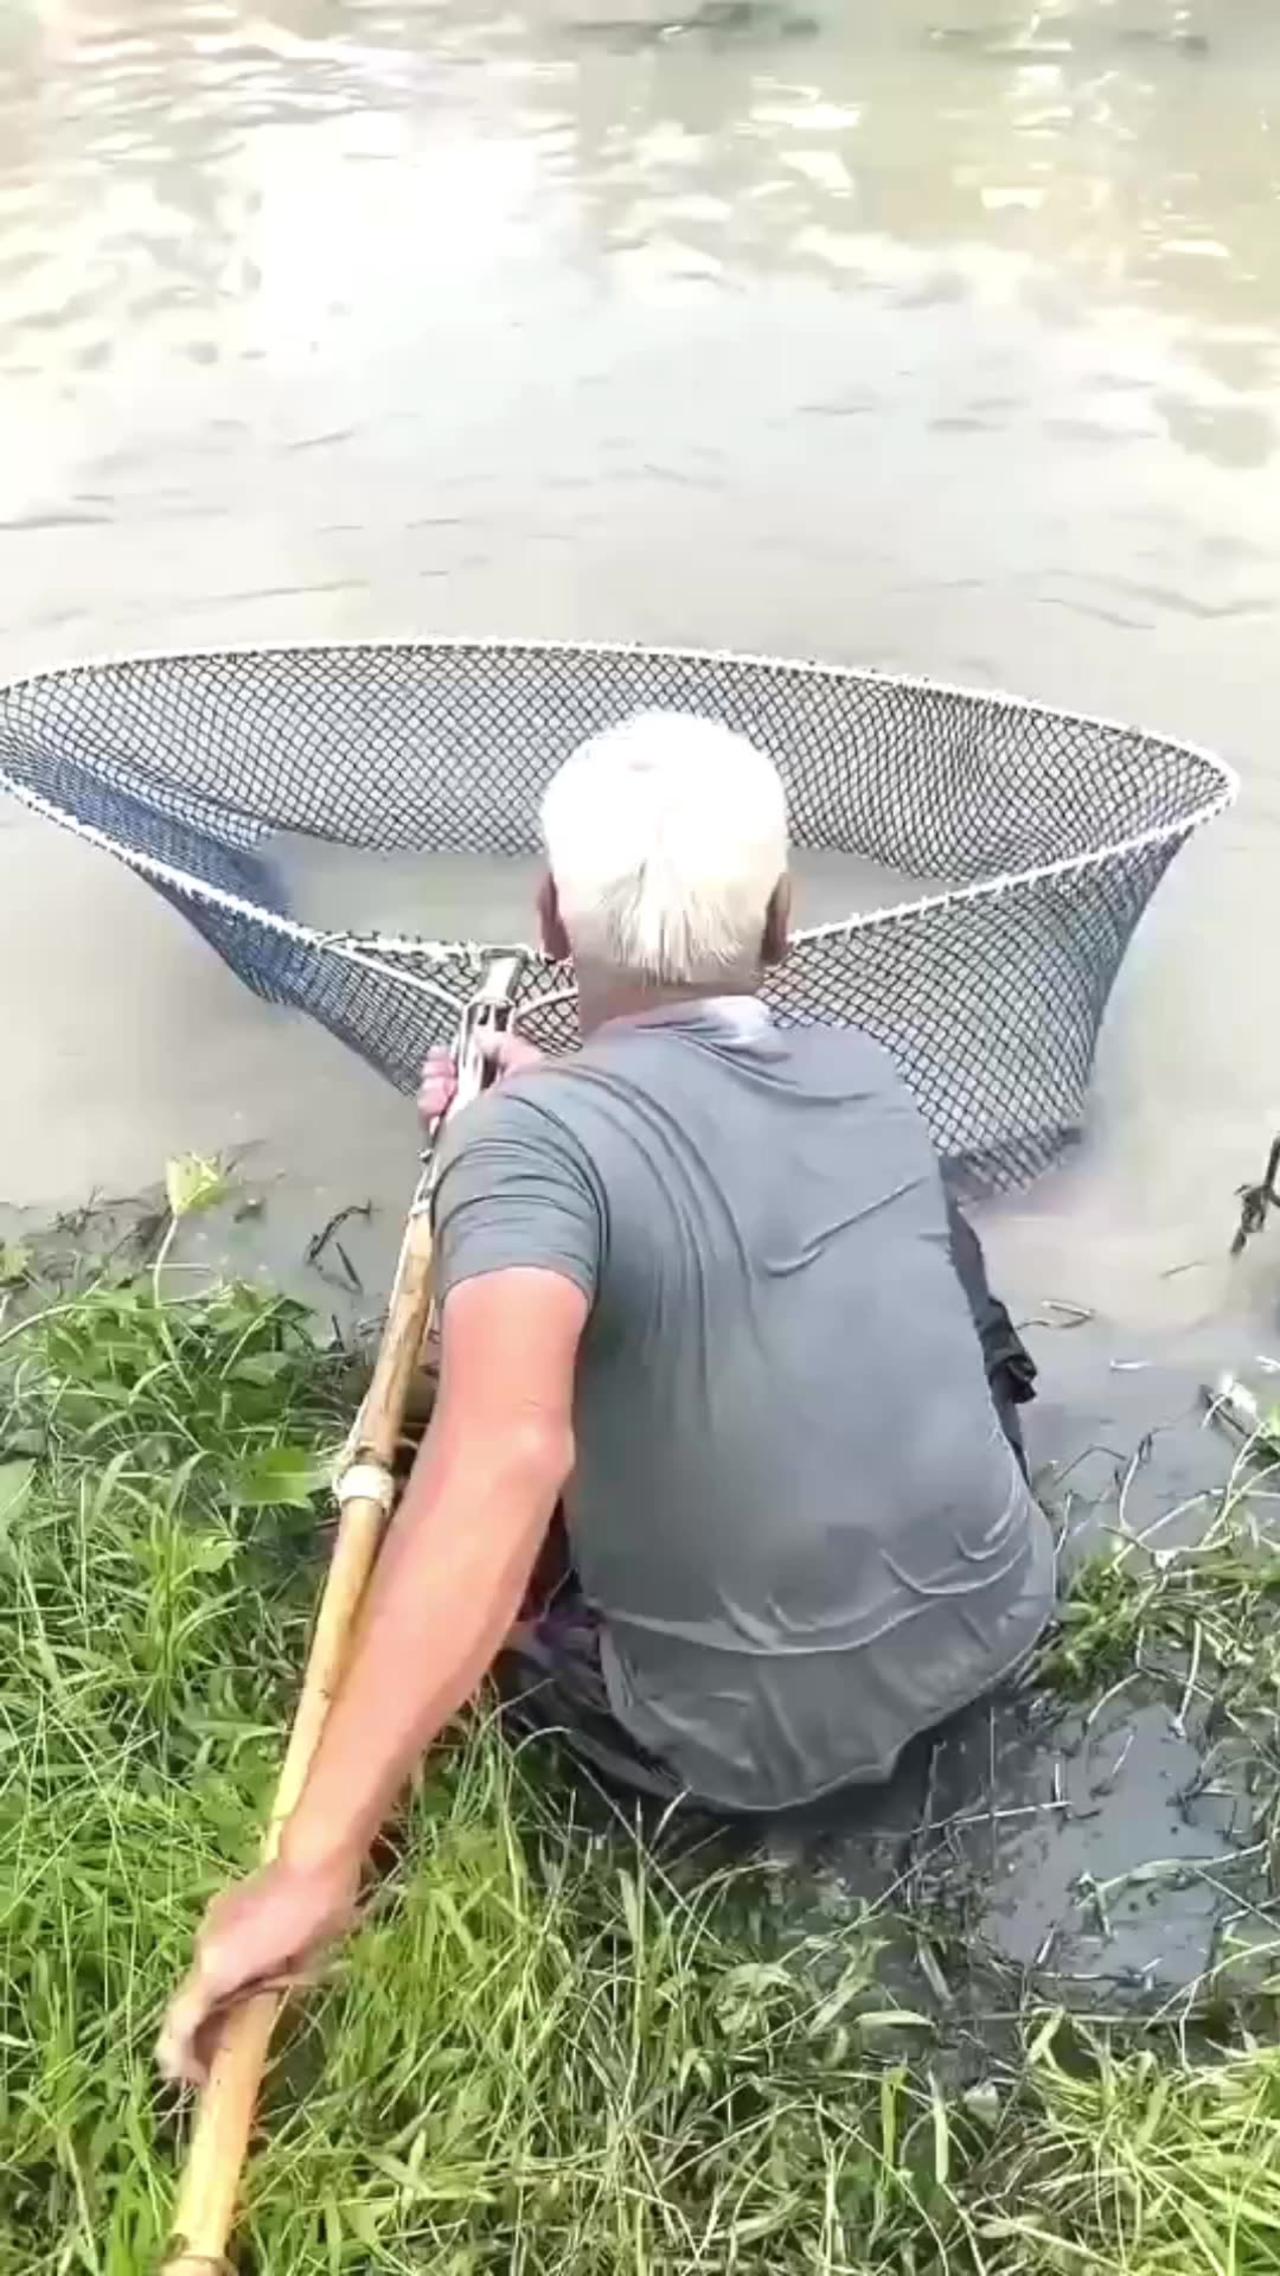 Amazing Fisherman Skills Hunting Massive Fish